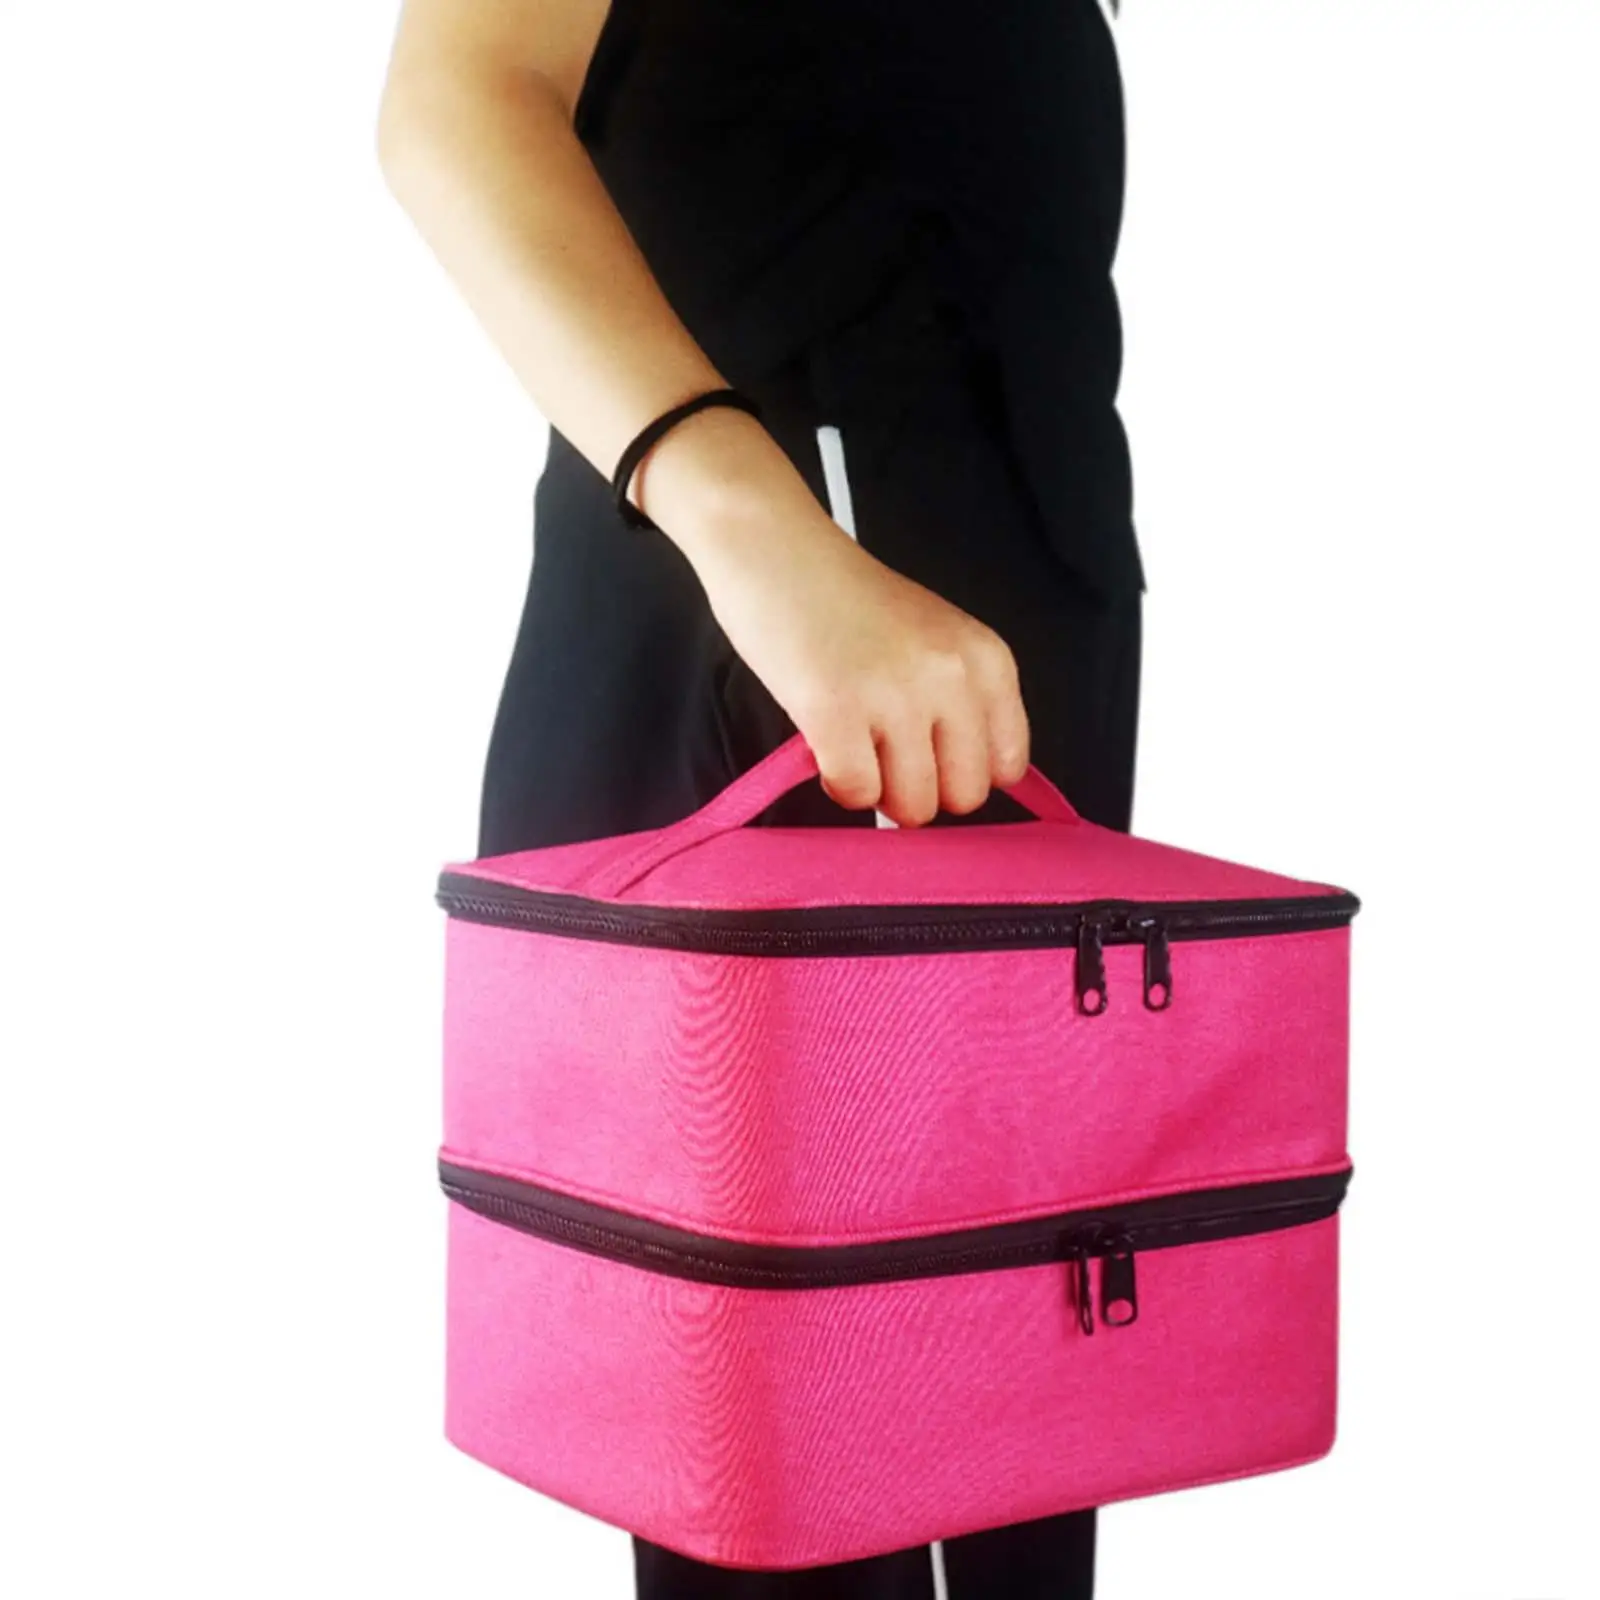 Nail Polish Storage Bag with Adjustable Dividers Holds 30 Bottles Handbag for Manicure Sets